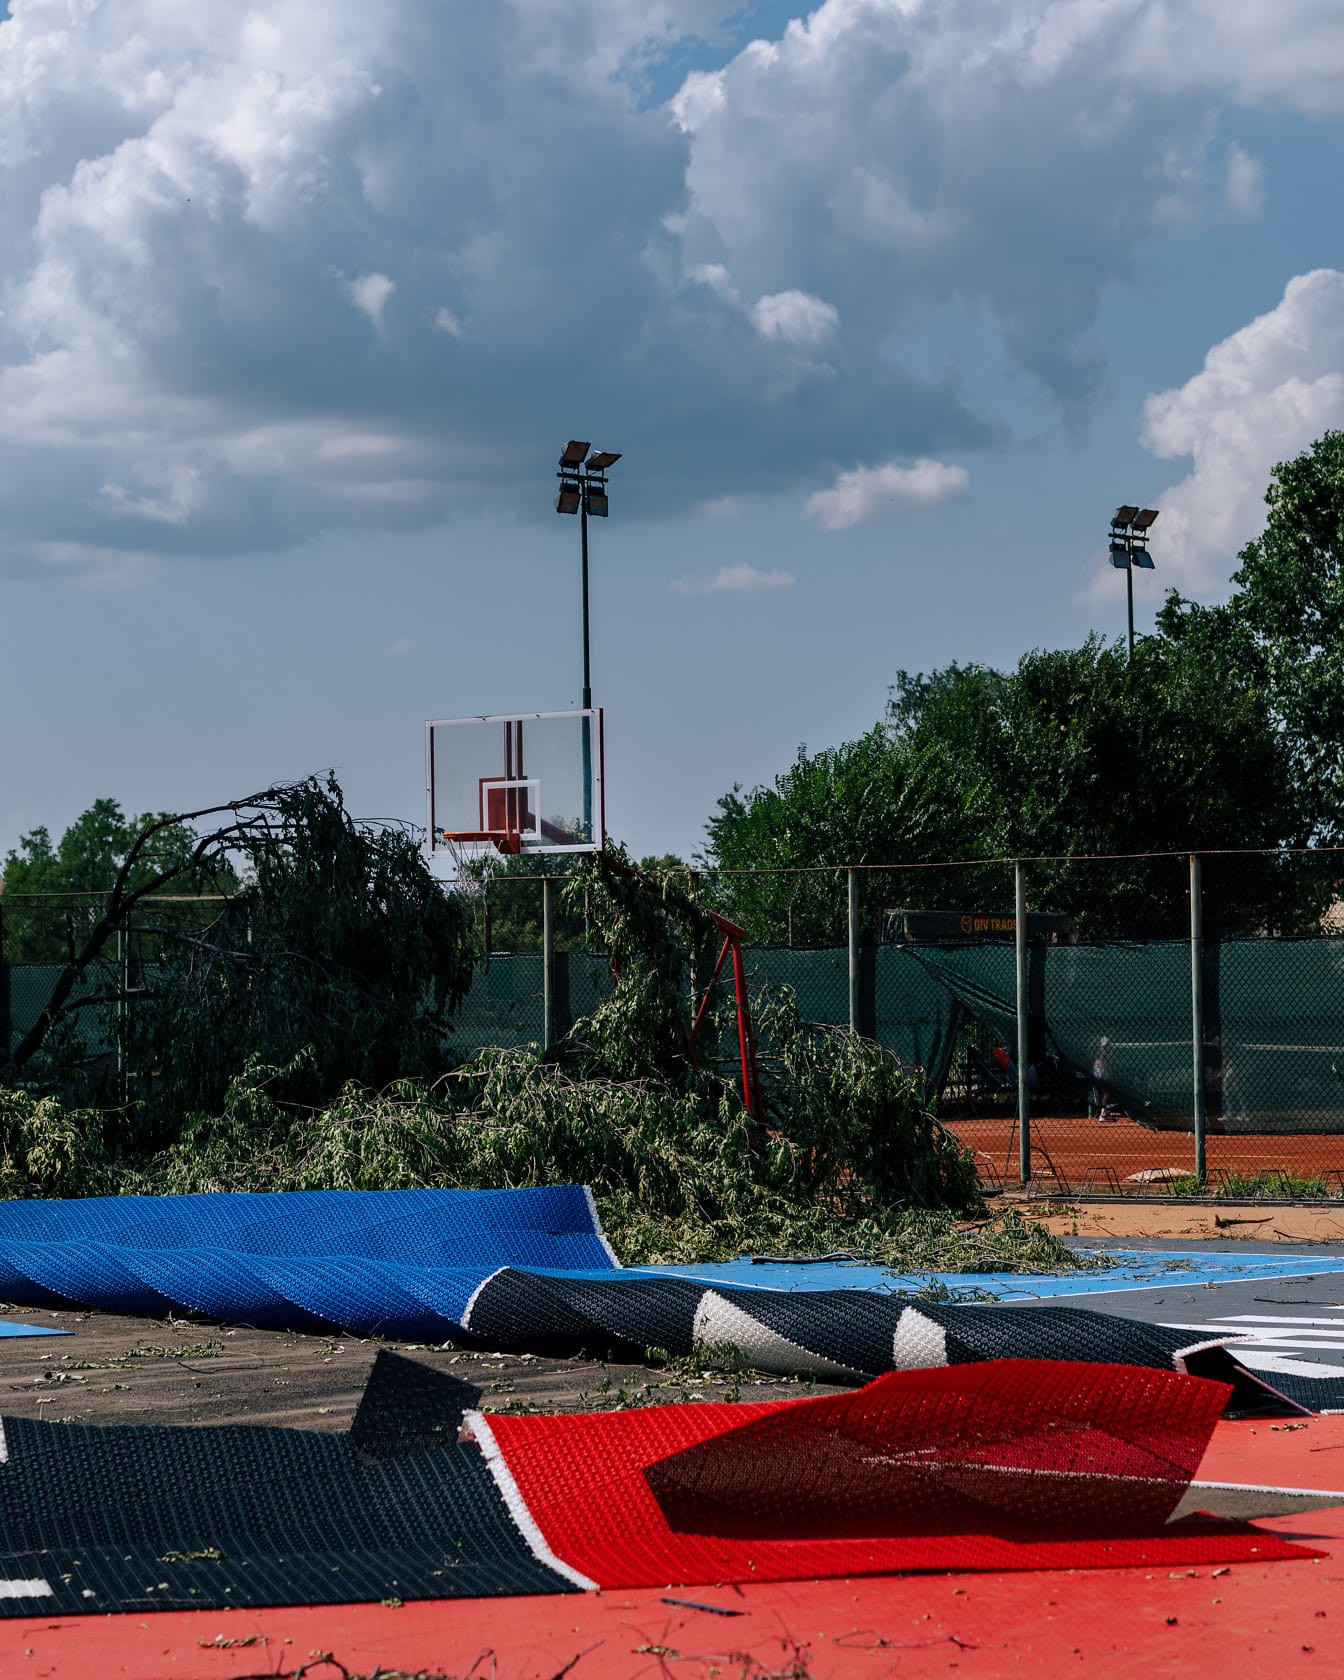 A hurrikán szél fákat és kosárlabdapályát károsít